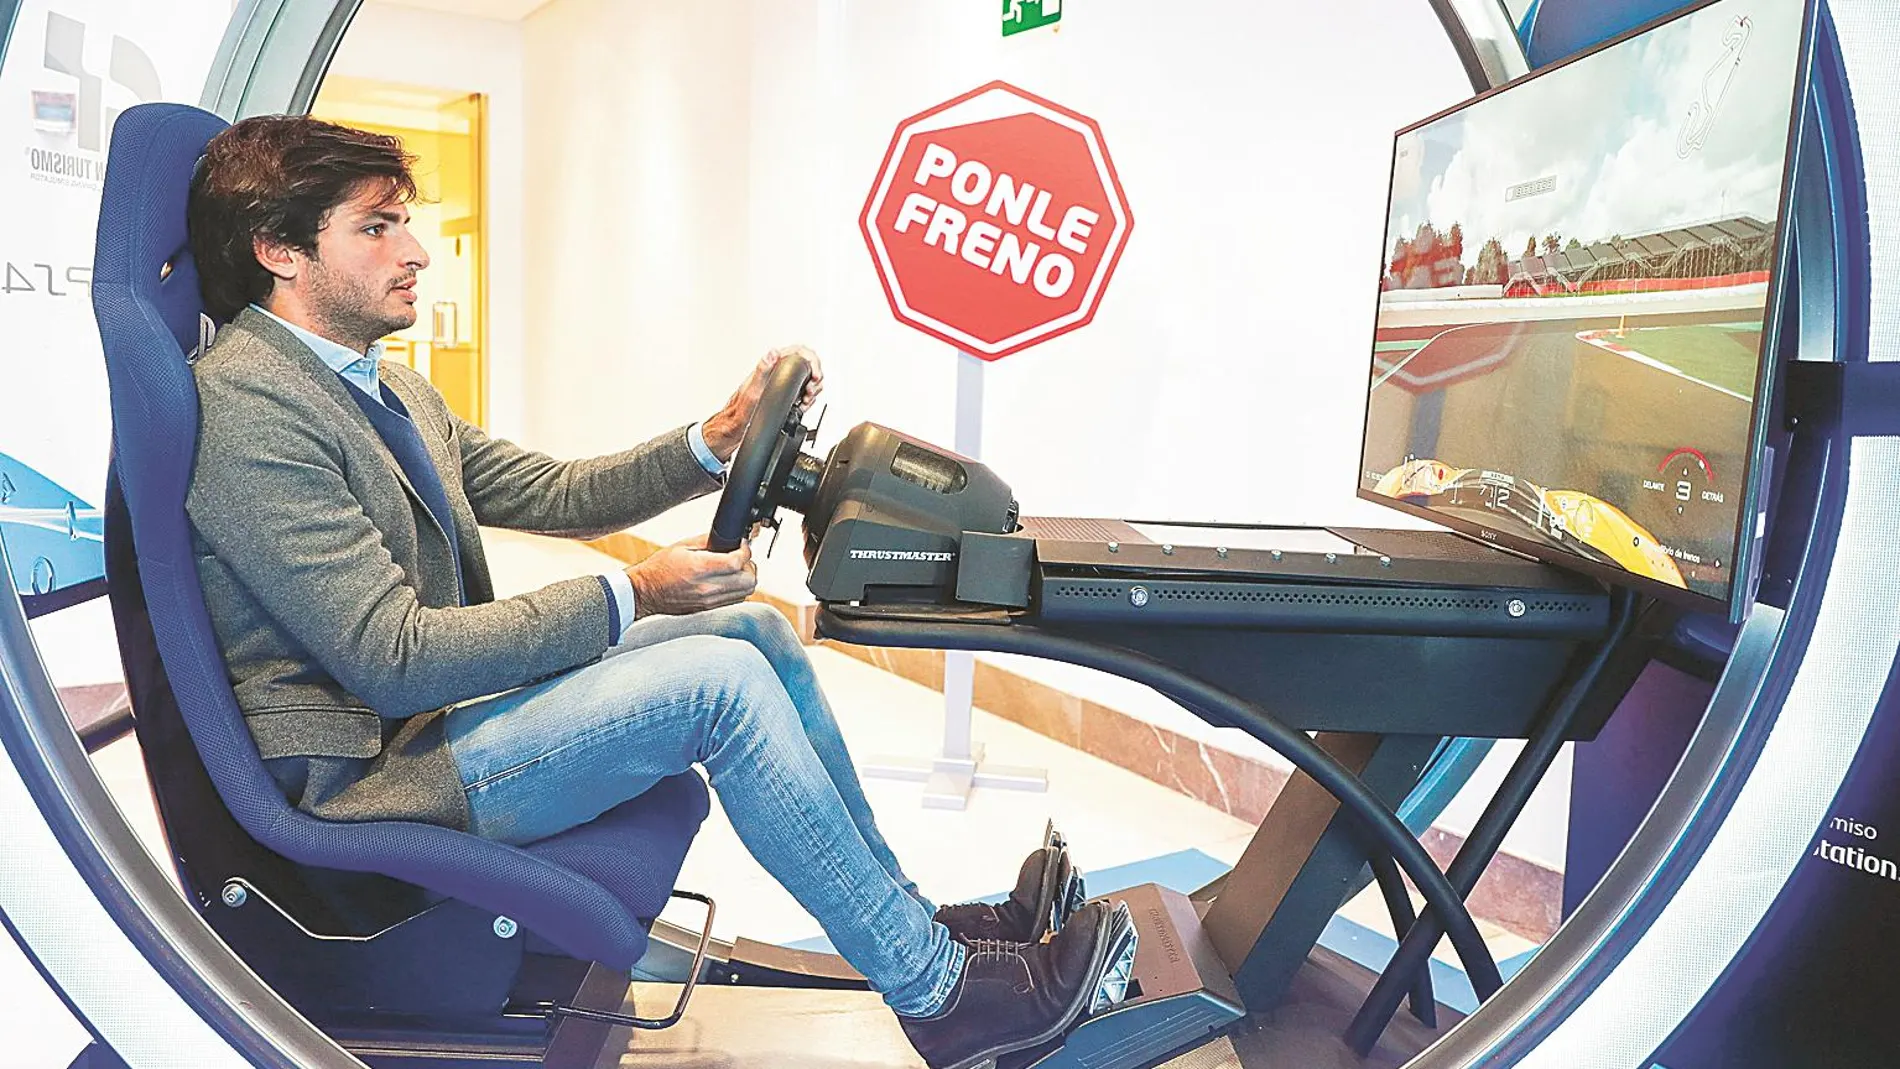 Carlos Sainz es la nueva imagen de la campaña de Ponle Freno, que salta a los videojuegos de la mano de PlayStation